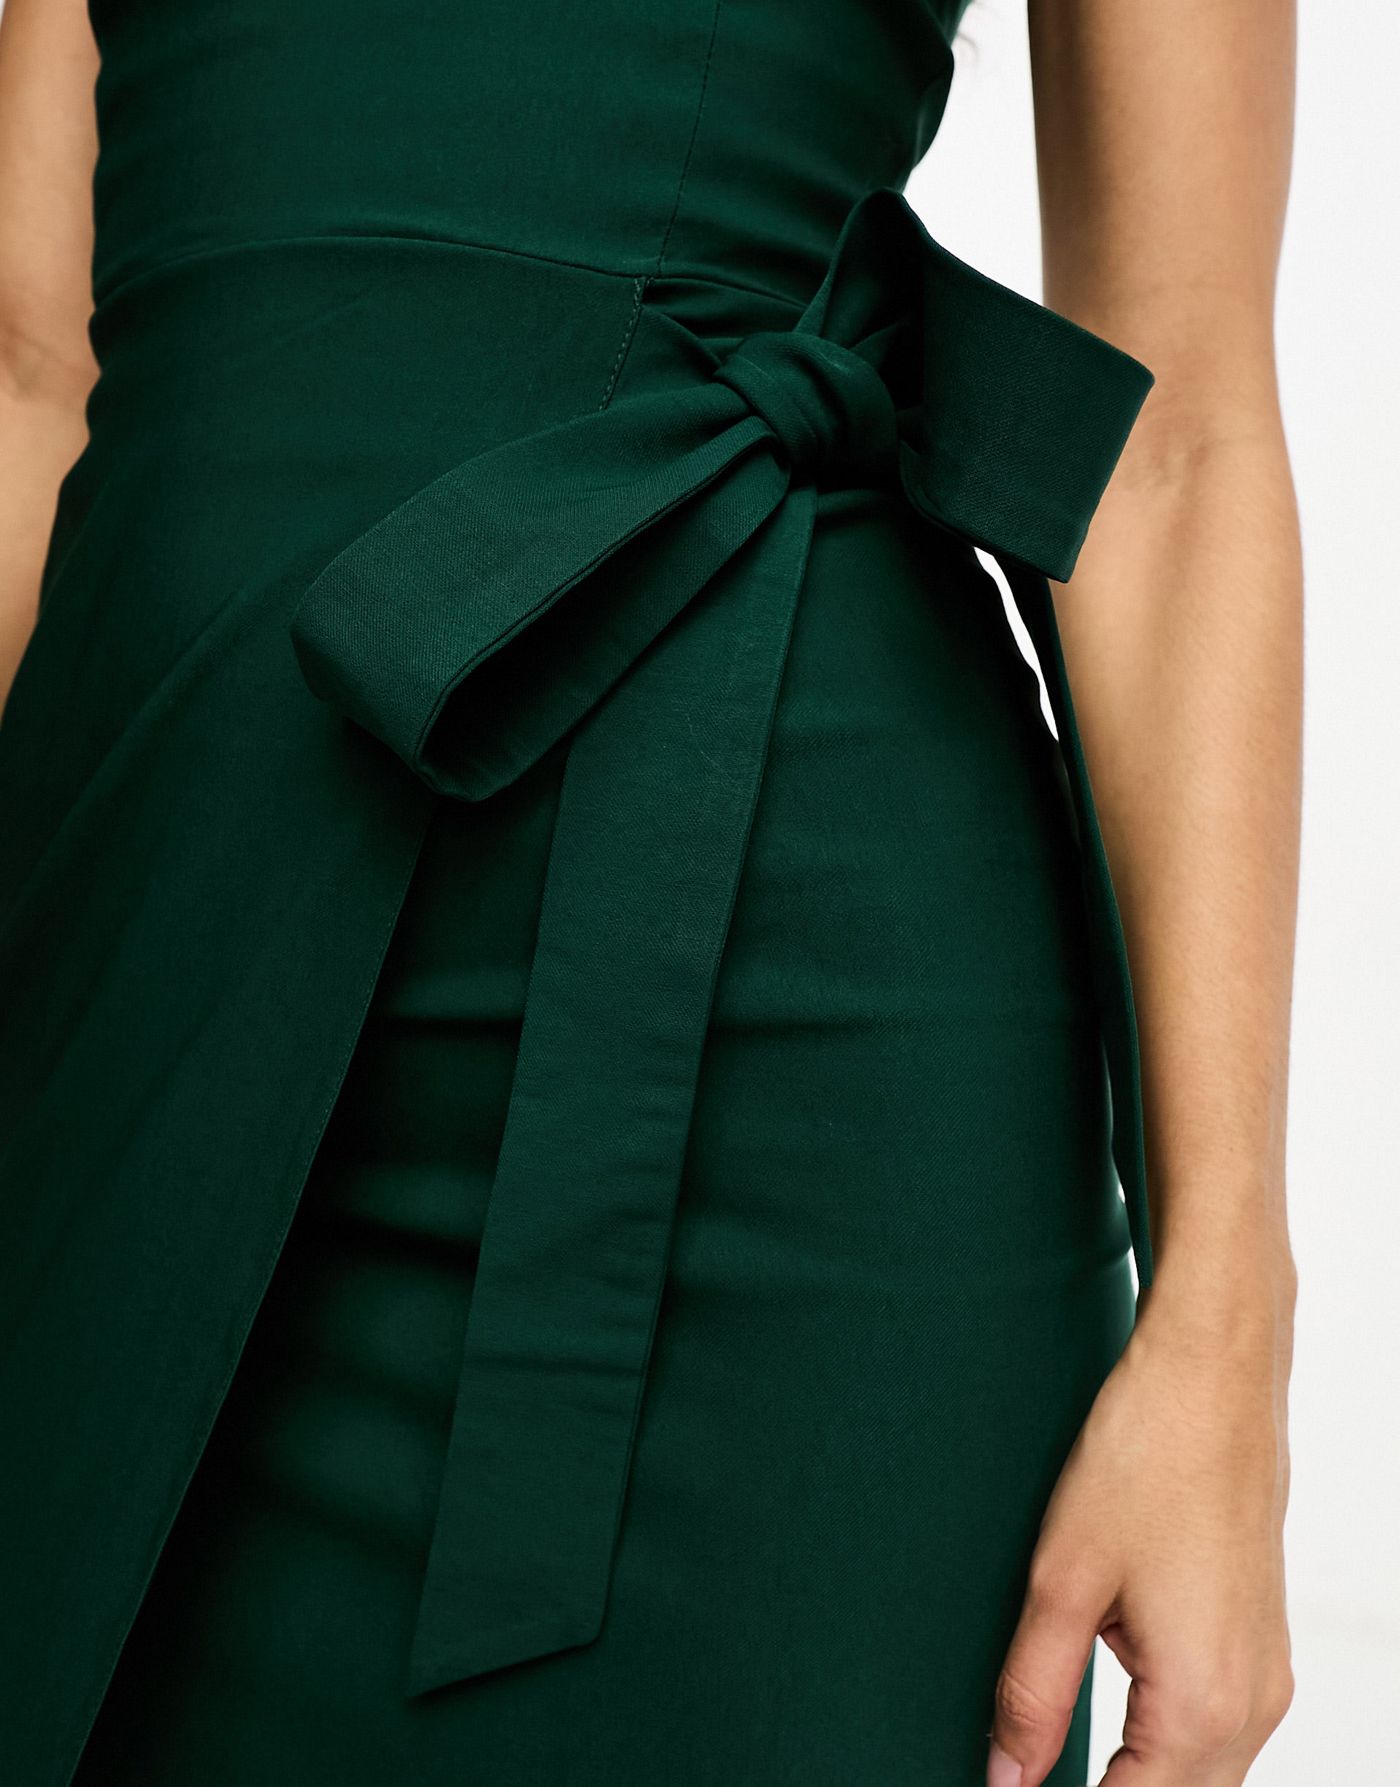 Vesper bandeau tie side tulip skirt midi dress in forest green